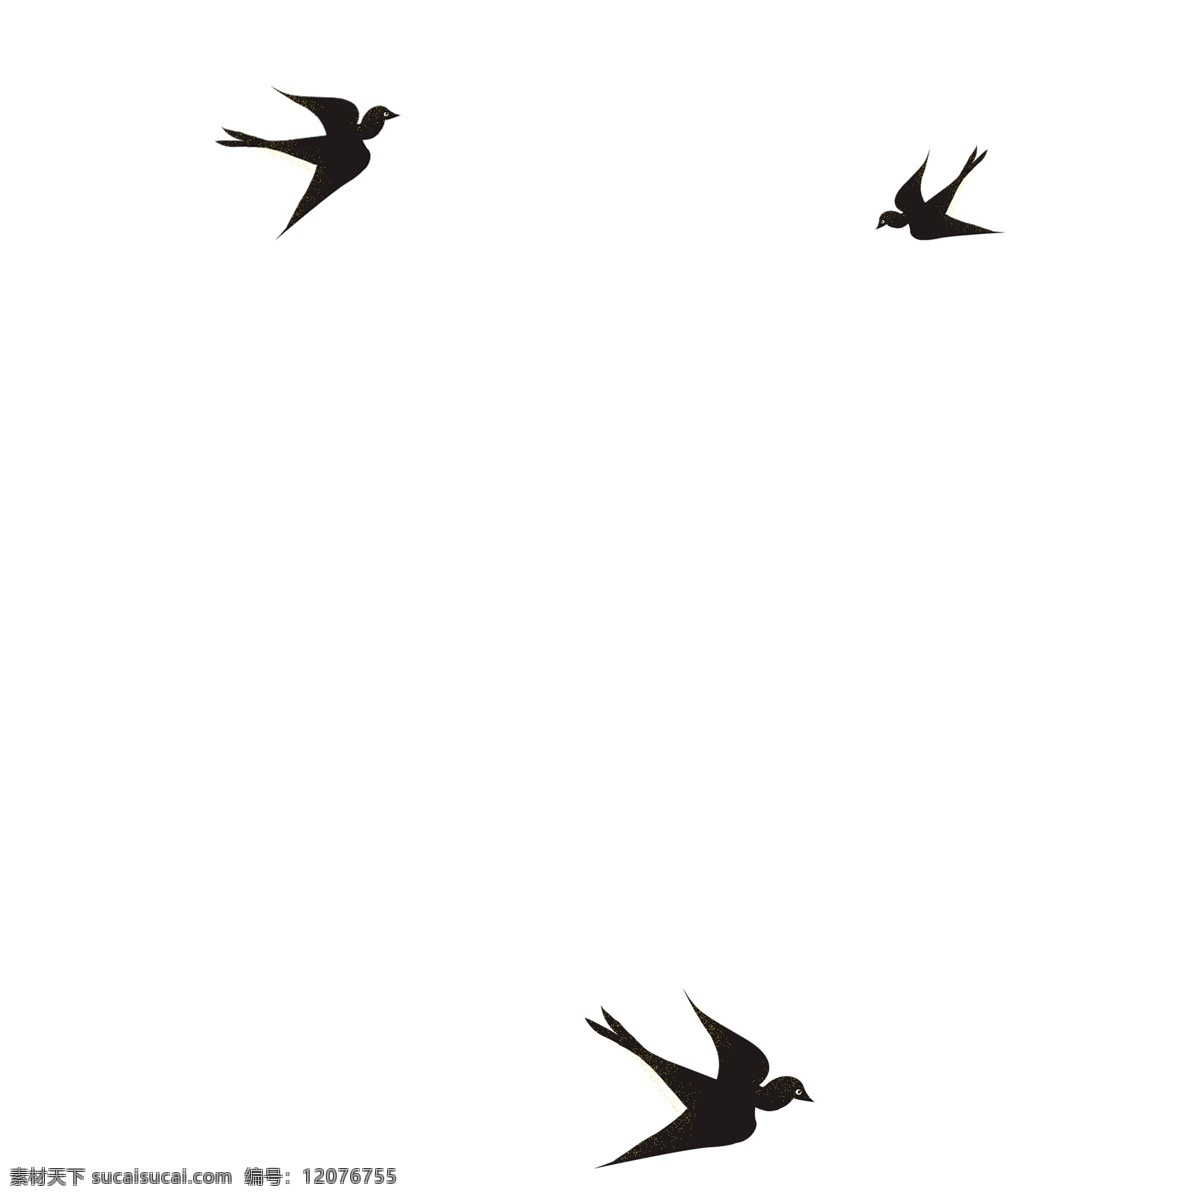 黑白 矢量 飞翔 的卡 通 燕子 动漫动画 不模糊 可修改 手绘